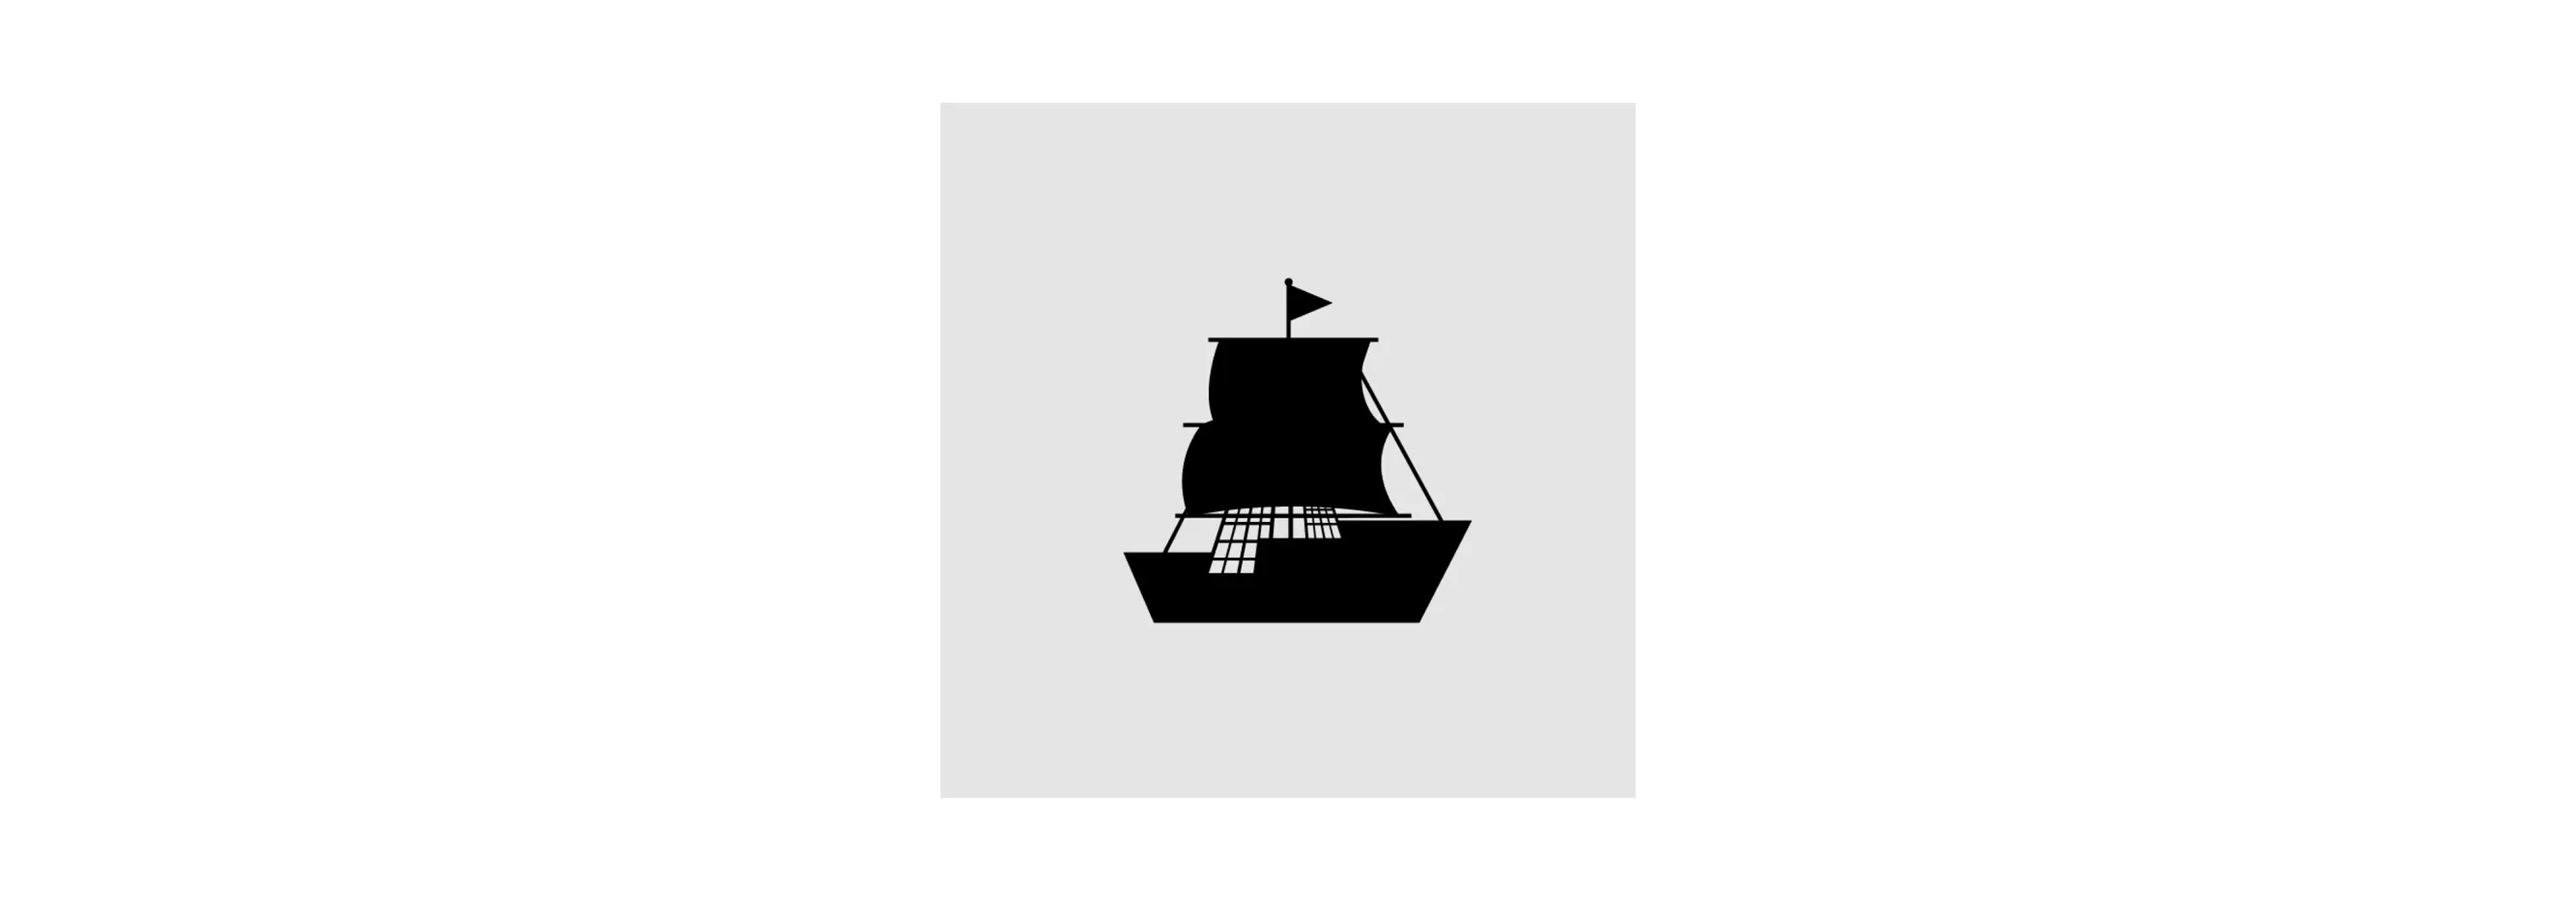 过于复杂的船 icon（来自：[Material](https://material.io/design/iconography/system-icons.html)）